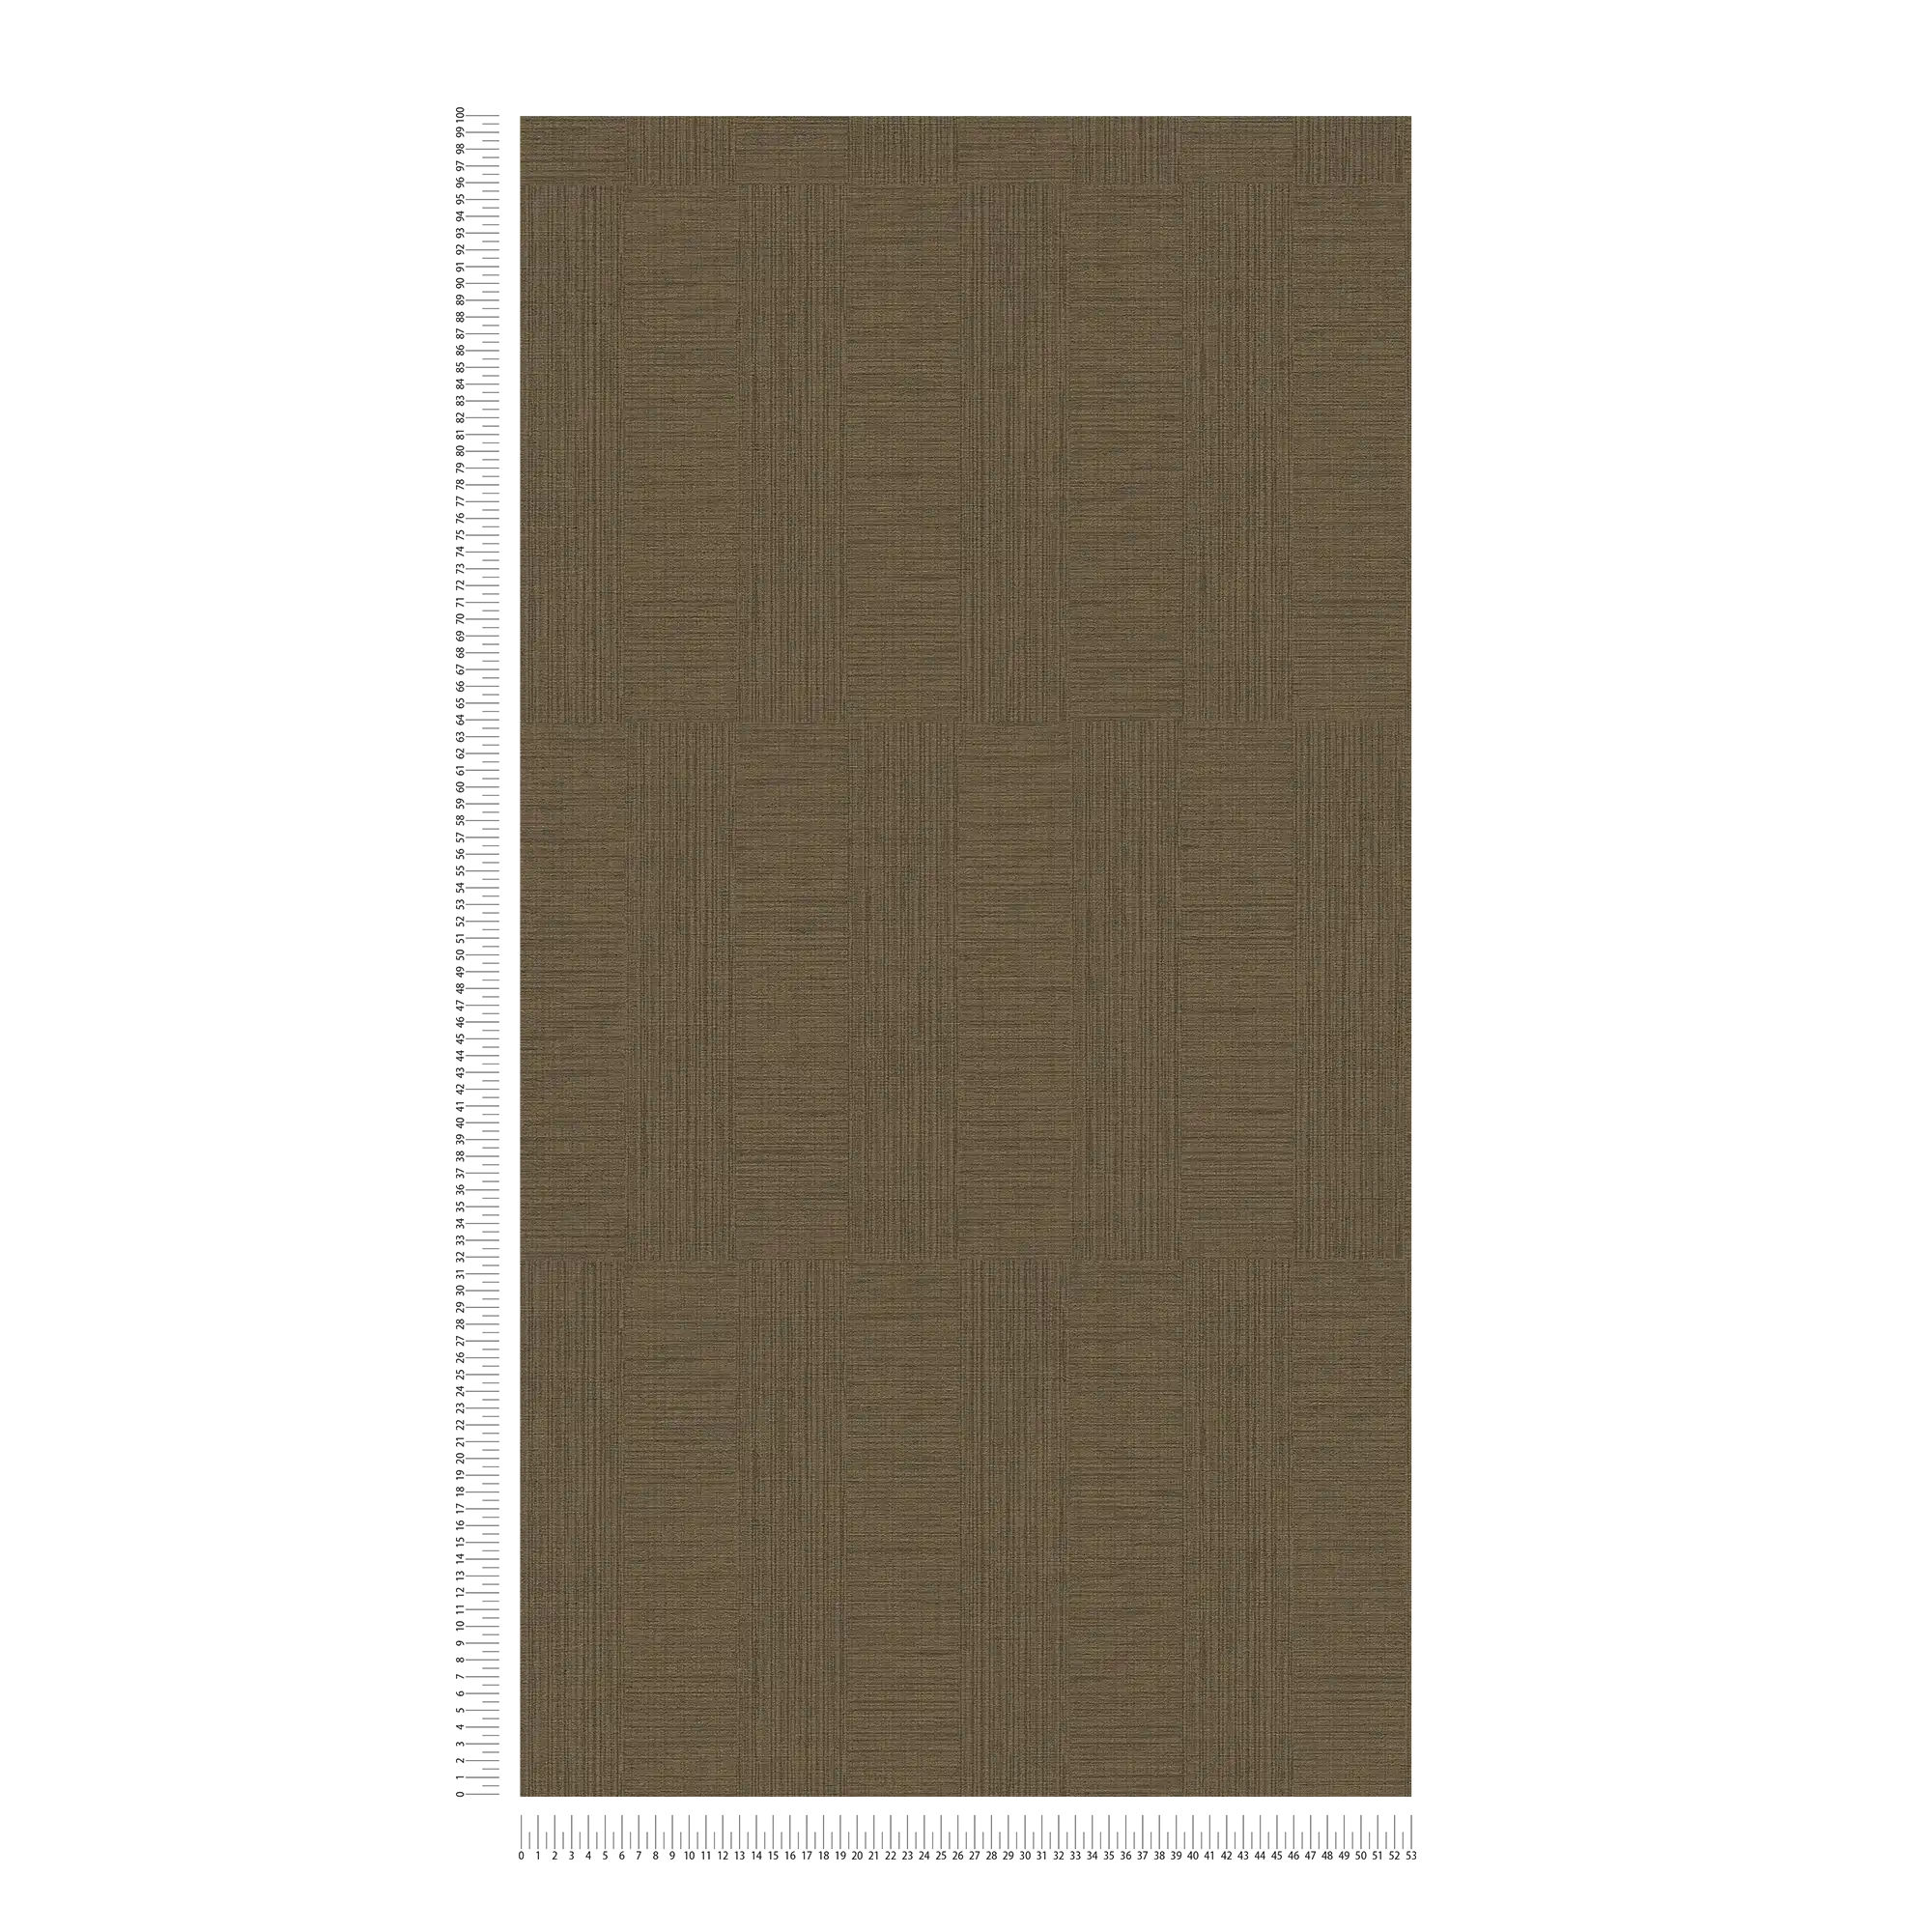             behang met rechthoekpatroon in retrostijl - bruin
        